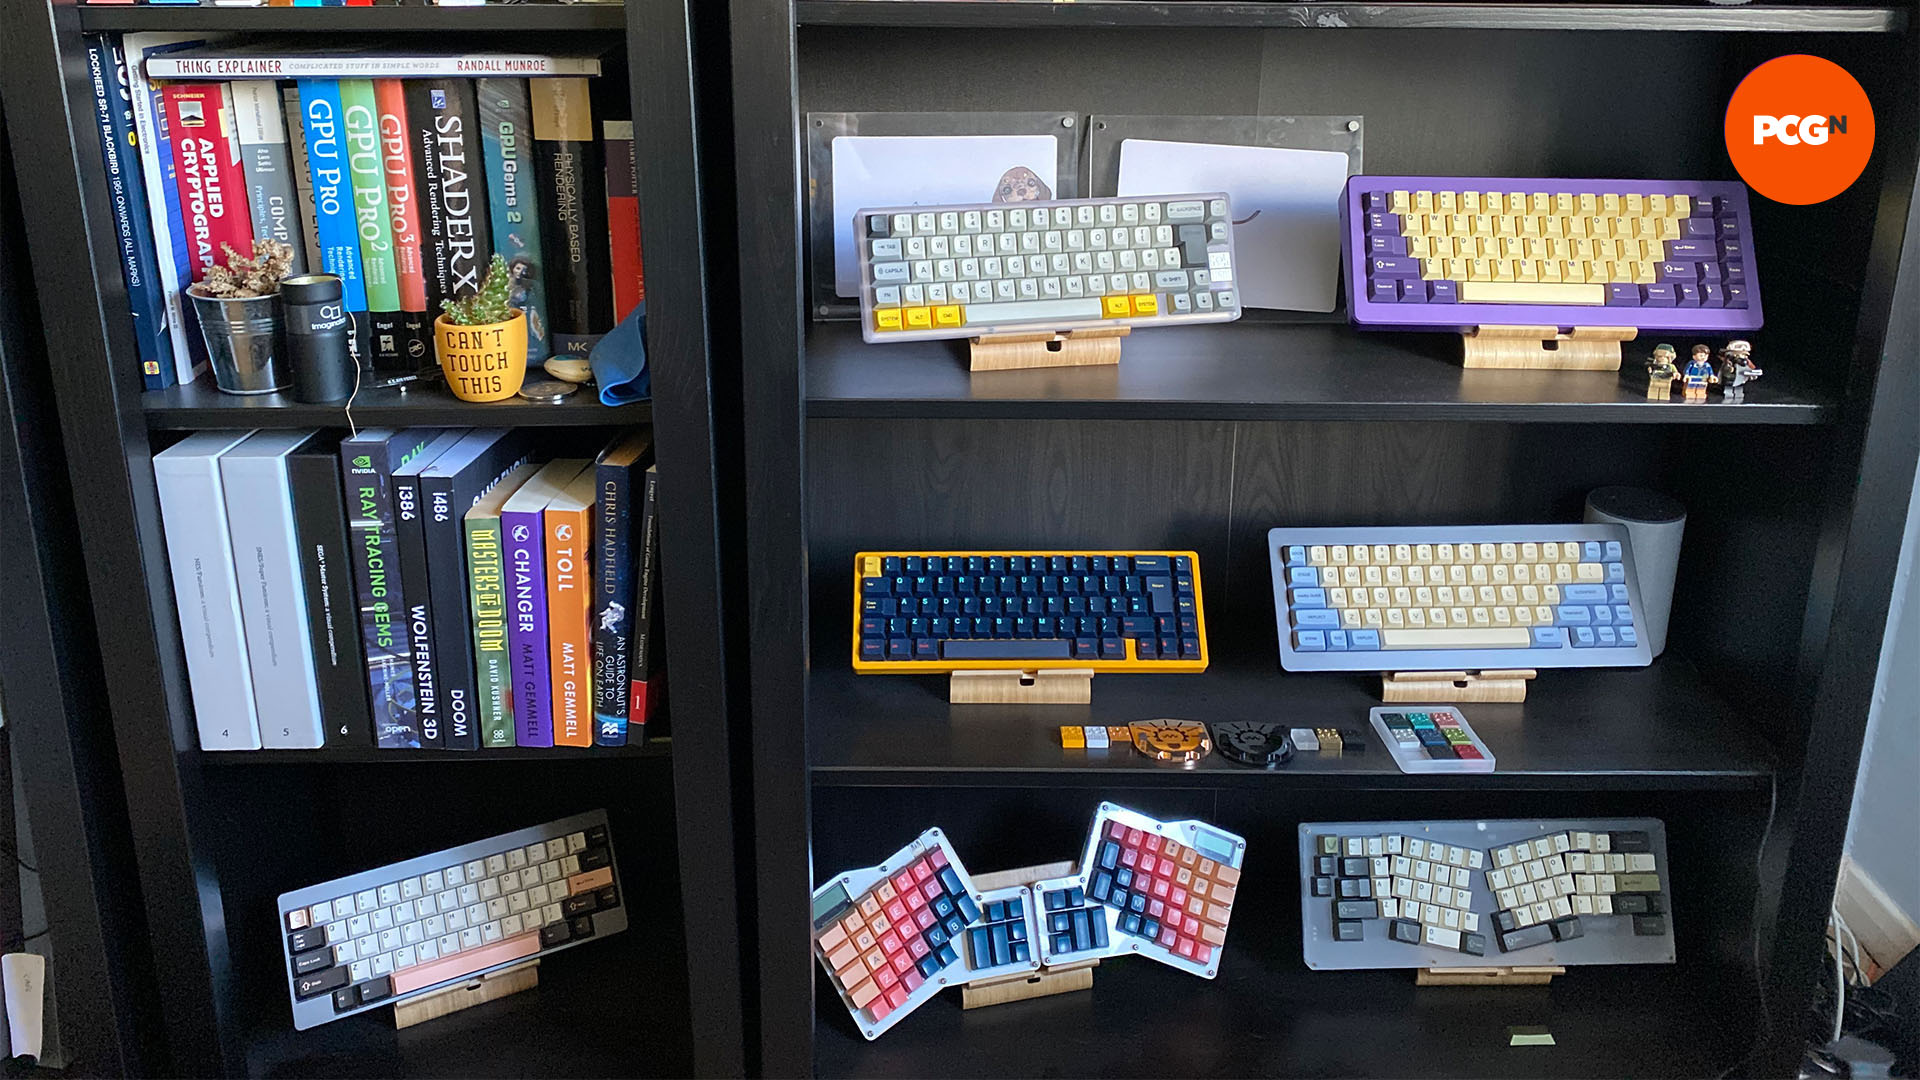 How to make a custom keyboard: Custom keyboards on Rys' shelf